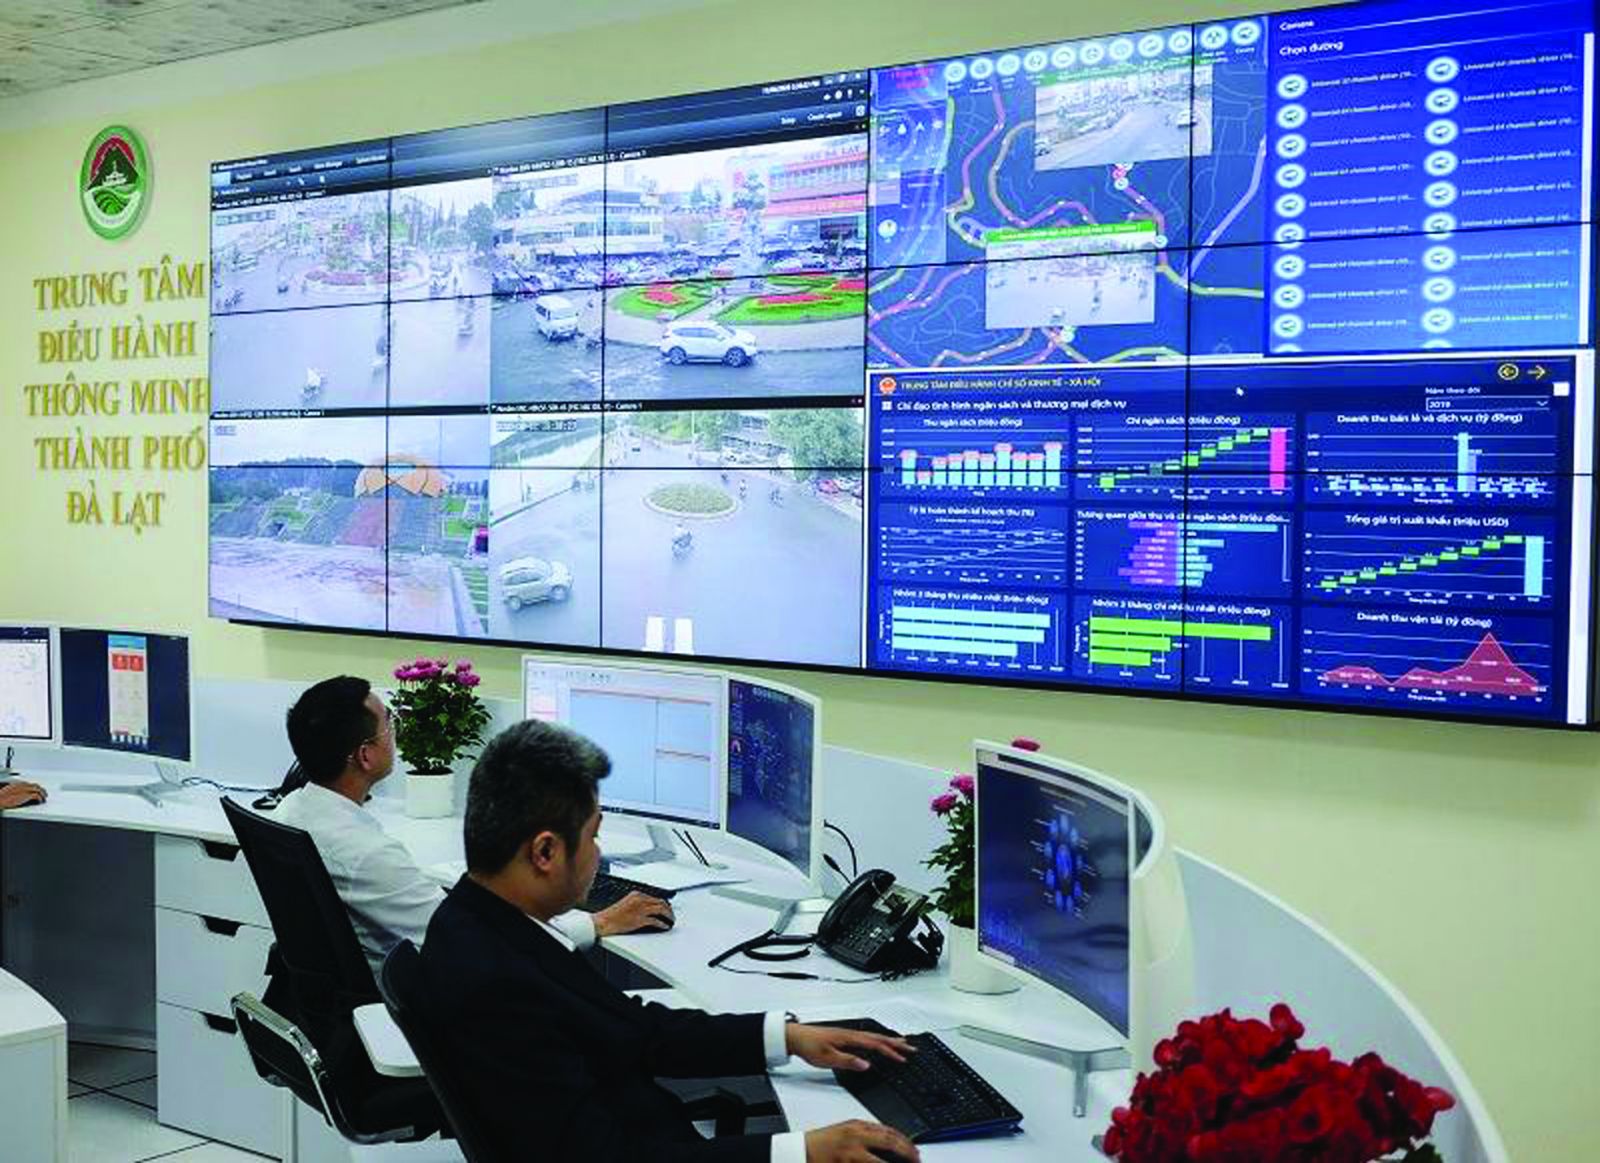  Trung tâm điều hành thông minh Thành phố Đà Lạt đi vào hoạt động là một bước tiến lớn trên lộ trình xây dựng Đà Lạt trở thành thành phố thông minh.